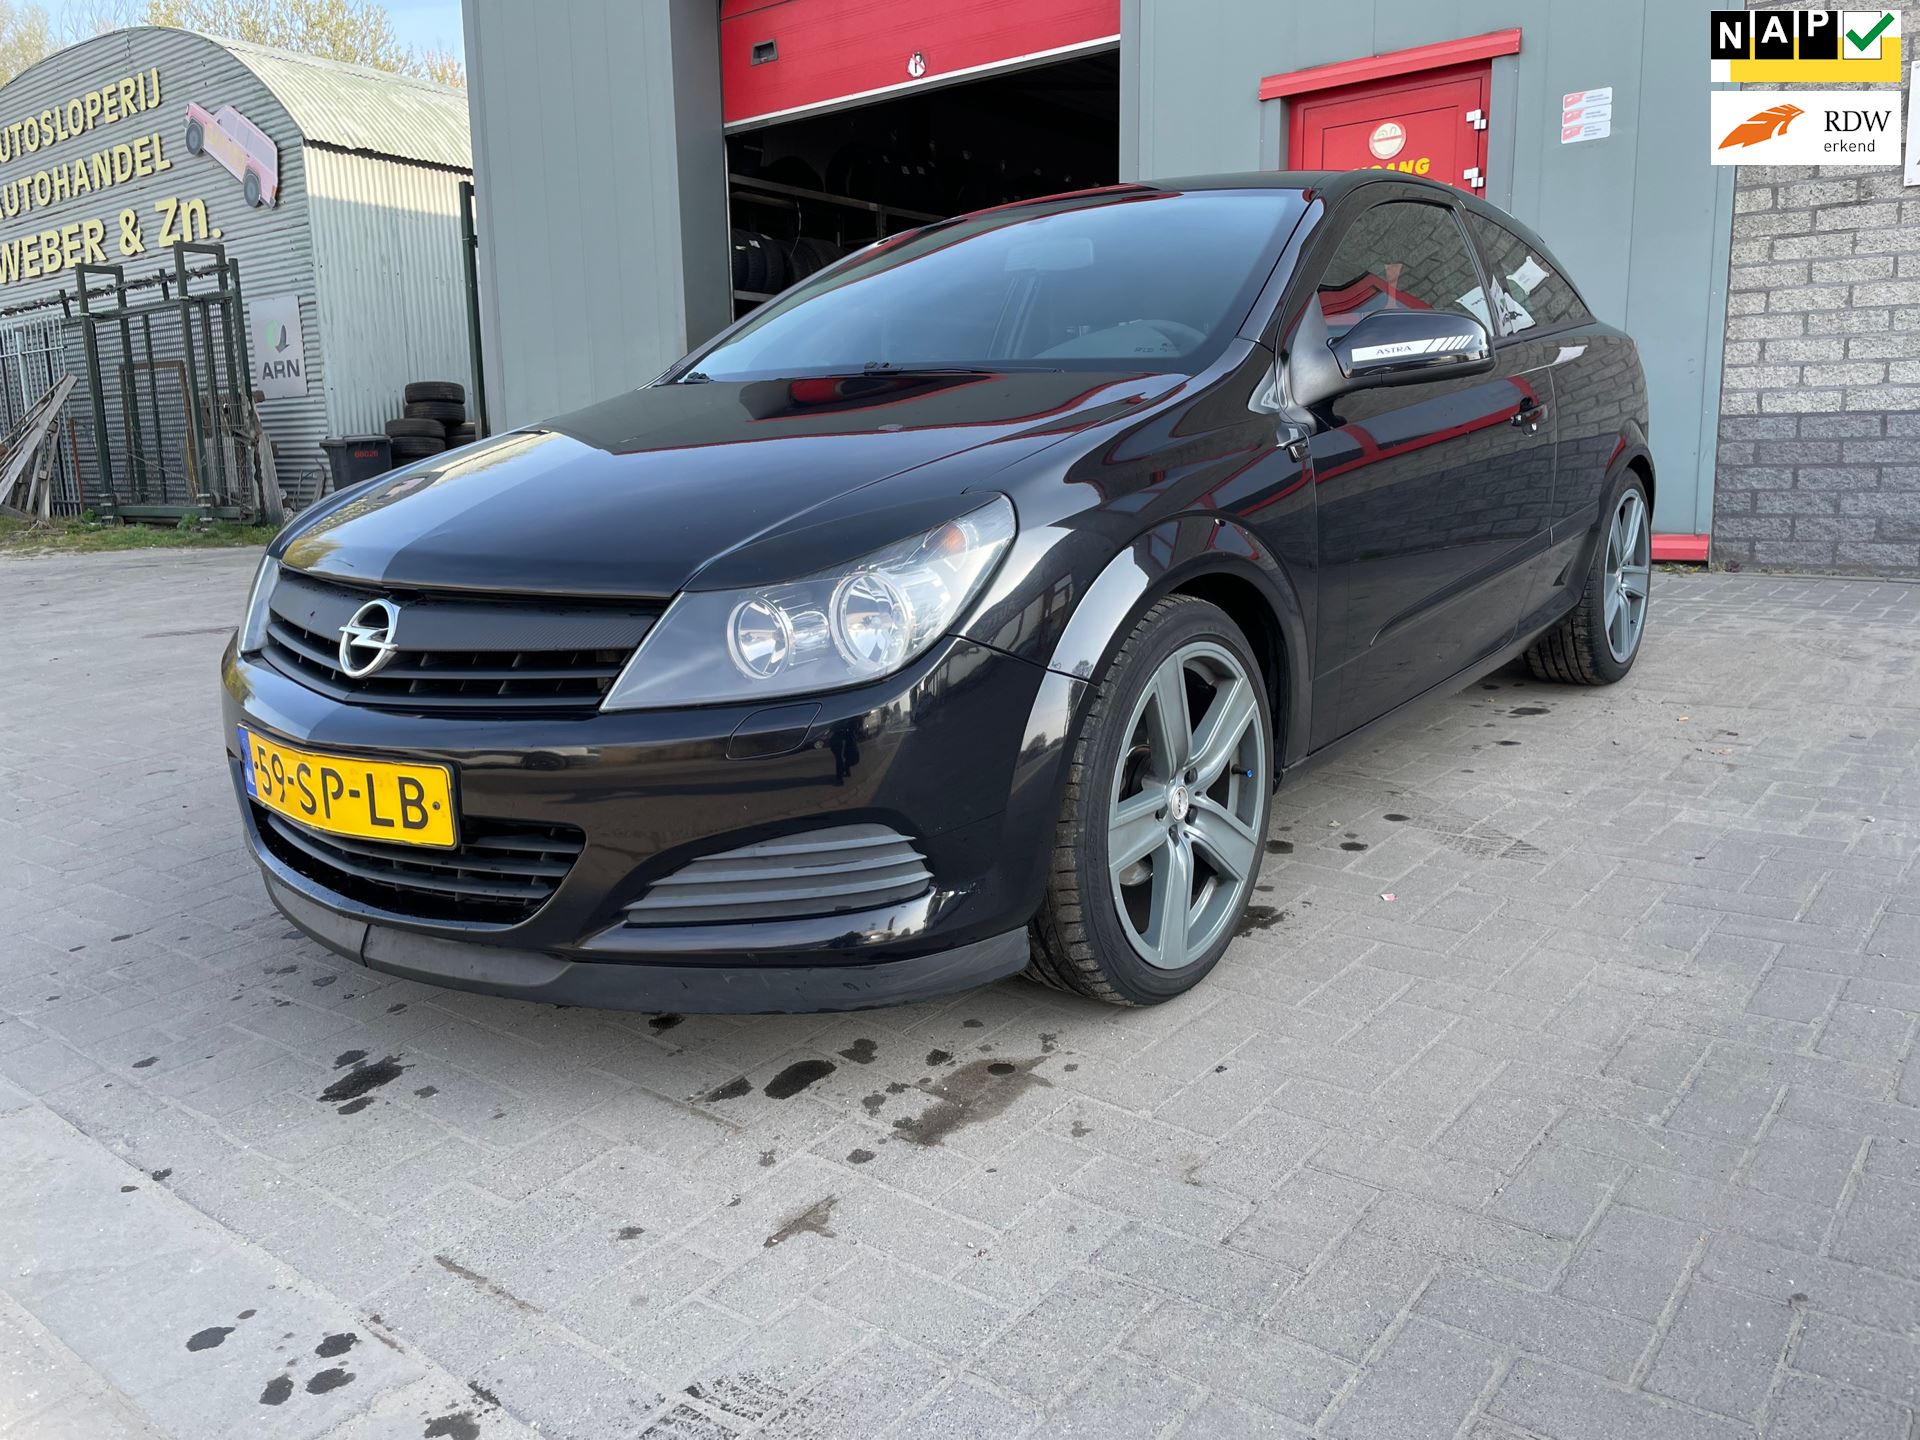 Opel Astra GTC occasion - Autobedrijf Tommie Weber & zn.